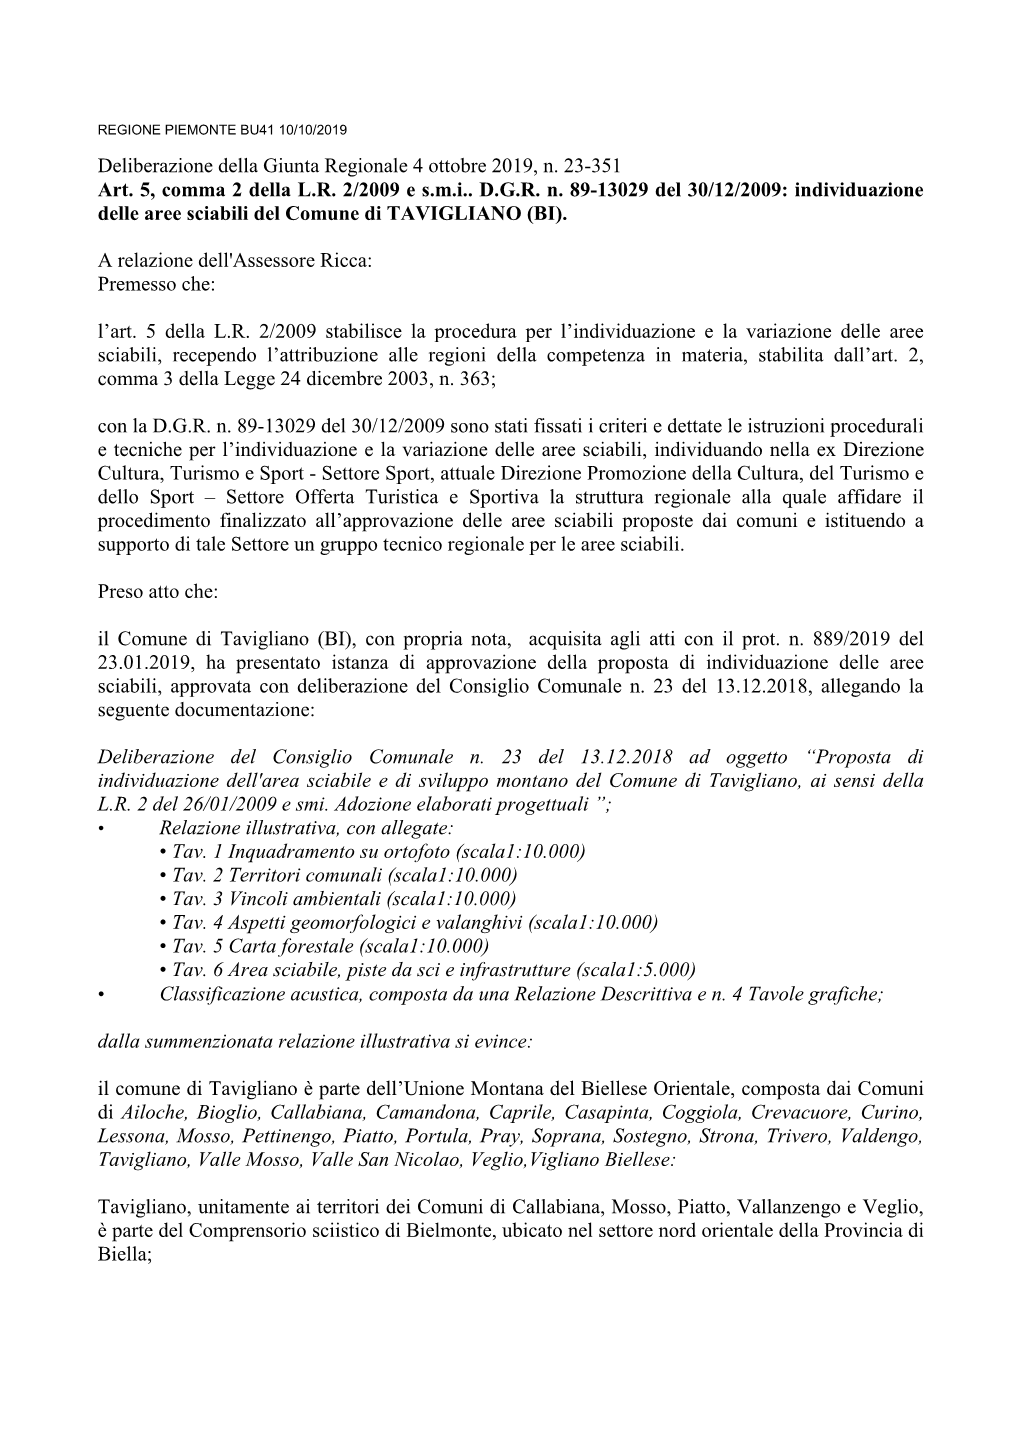 Deliberazione Della Giunta Regionale 4 Ottobre 2019, N. 23-351 Art. 5, Comma 2 Della L.R